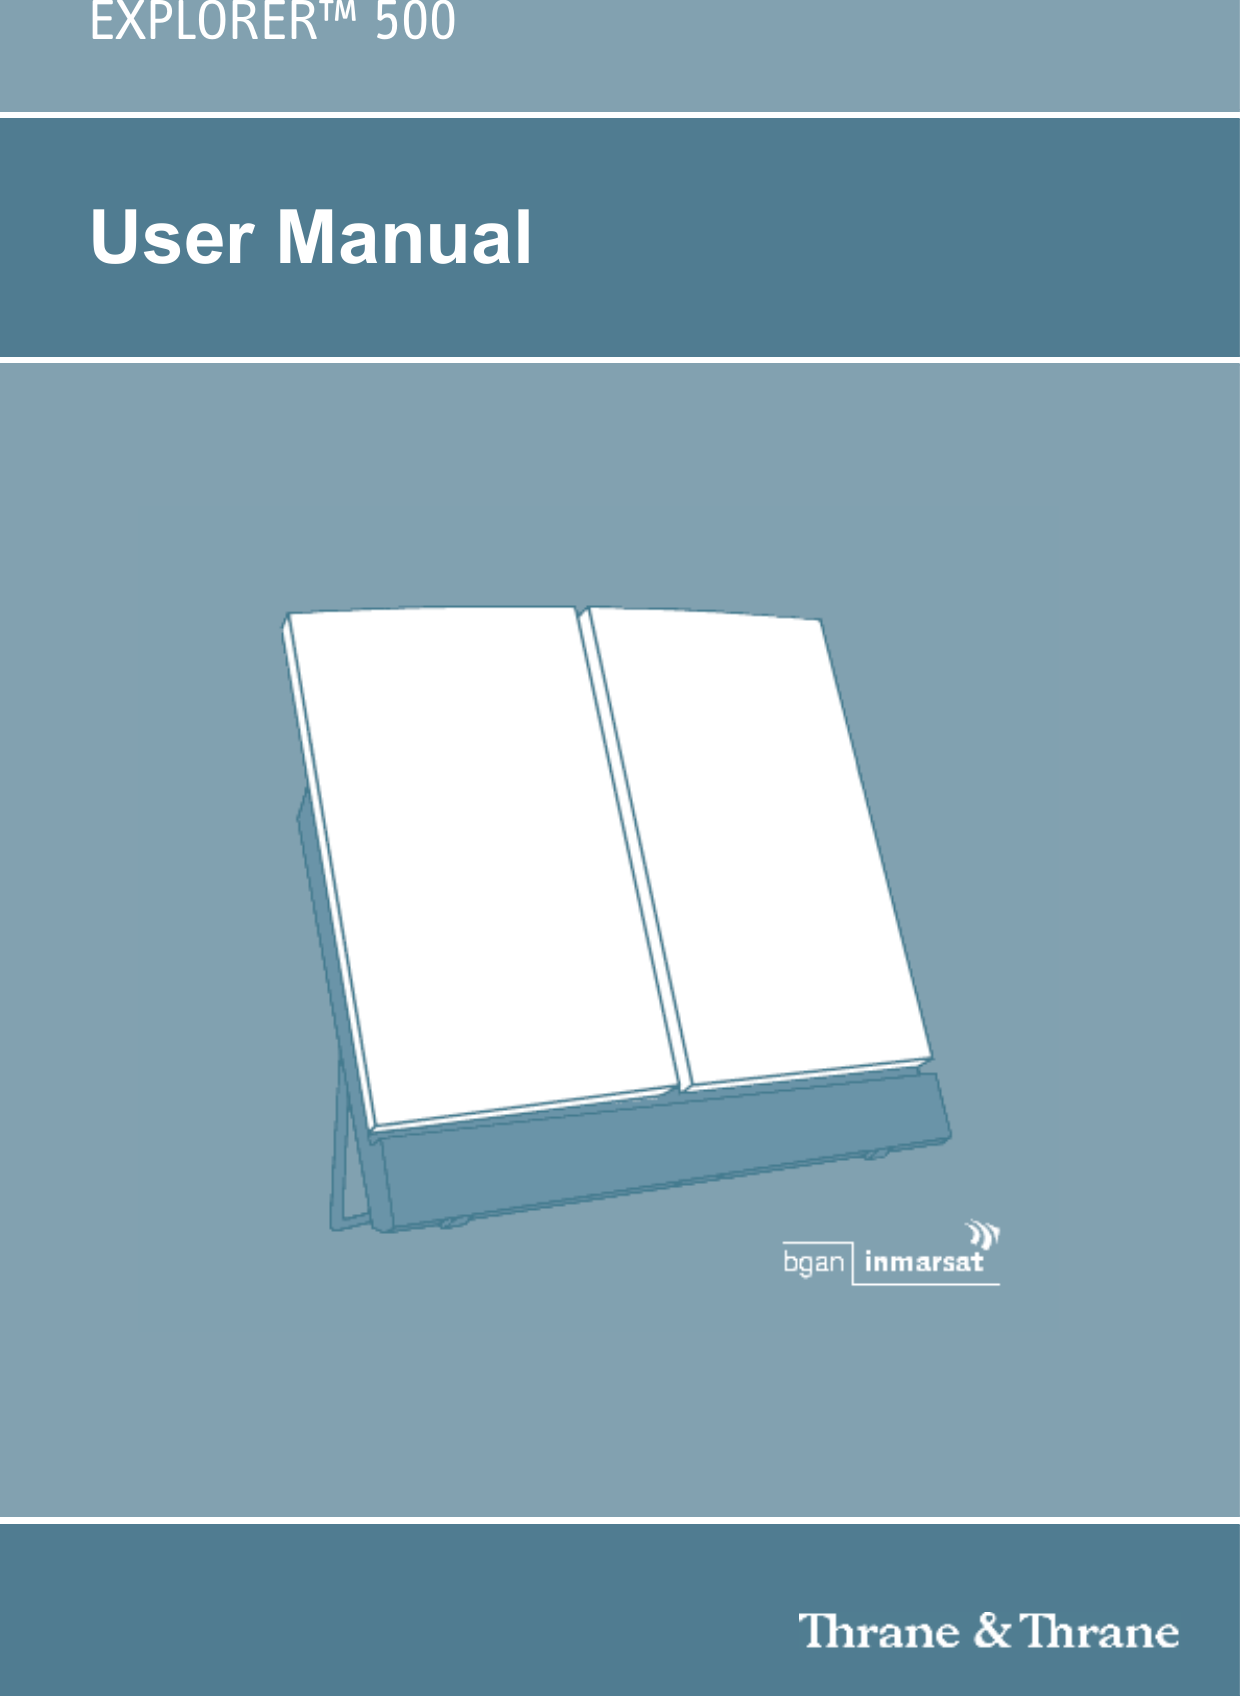 EXPLORER™ 500User Manual